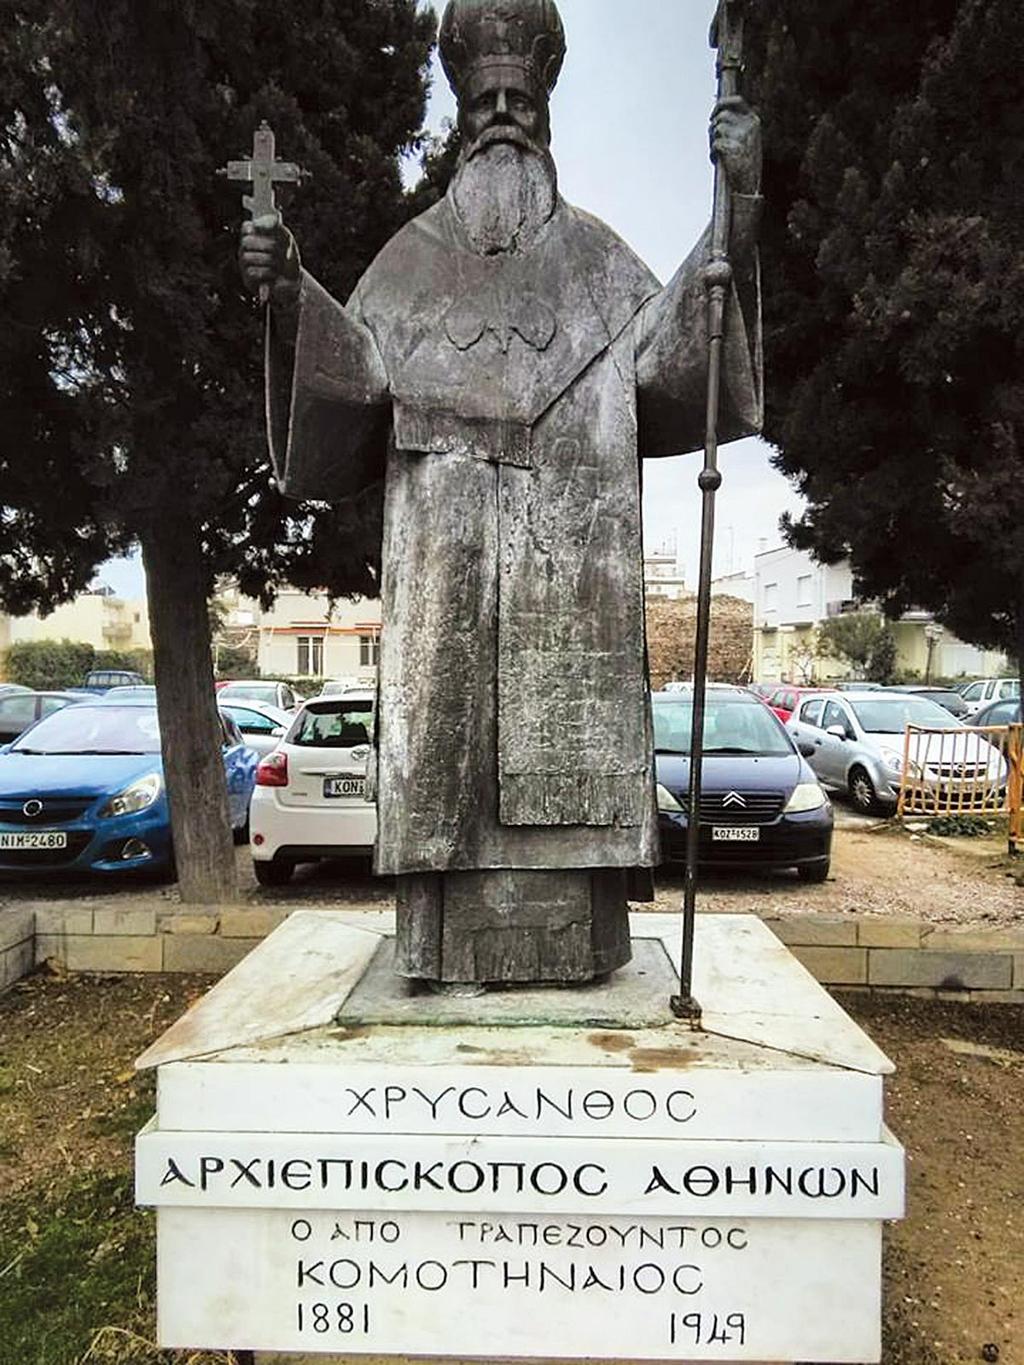 Κωνστάντιος Γαζής (1900-1902). Από Συλυβρίας. Εξελέγη τον Σεπτέμβριο του 1900. Ετέθη σε προσωρινή διαθεσιμότητα και αντικαταστάθηκε. Νικόλαος Σακκόπουλος (1902-1914). Από Αγκύρας.